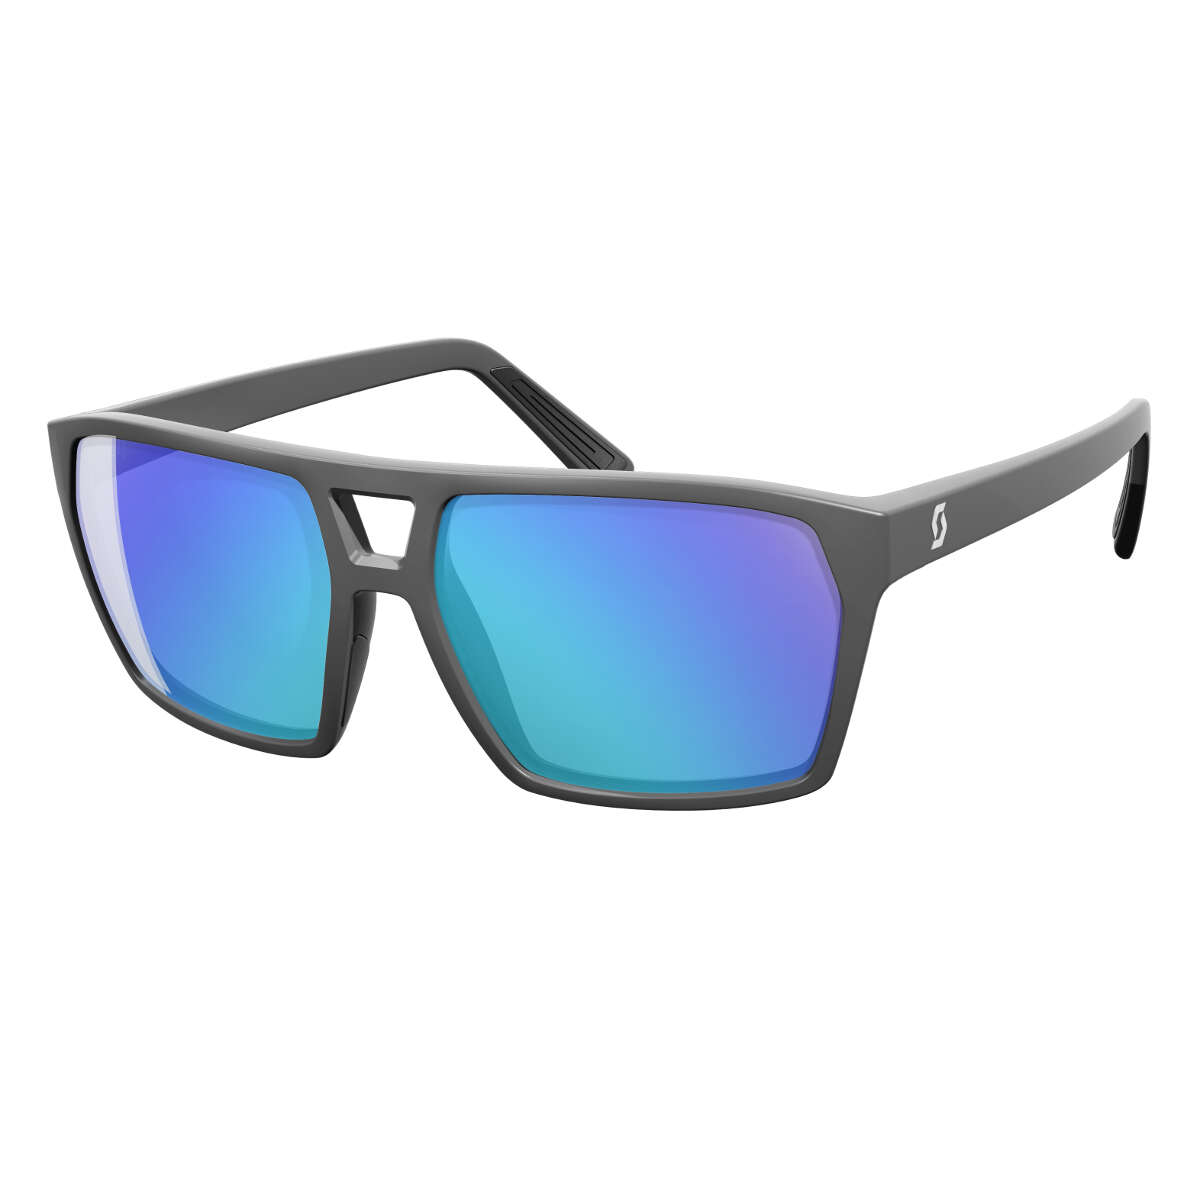 Scott Sunglasses Tune Grey - Blue Chrome